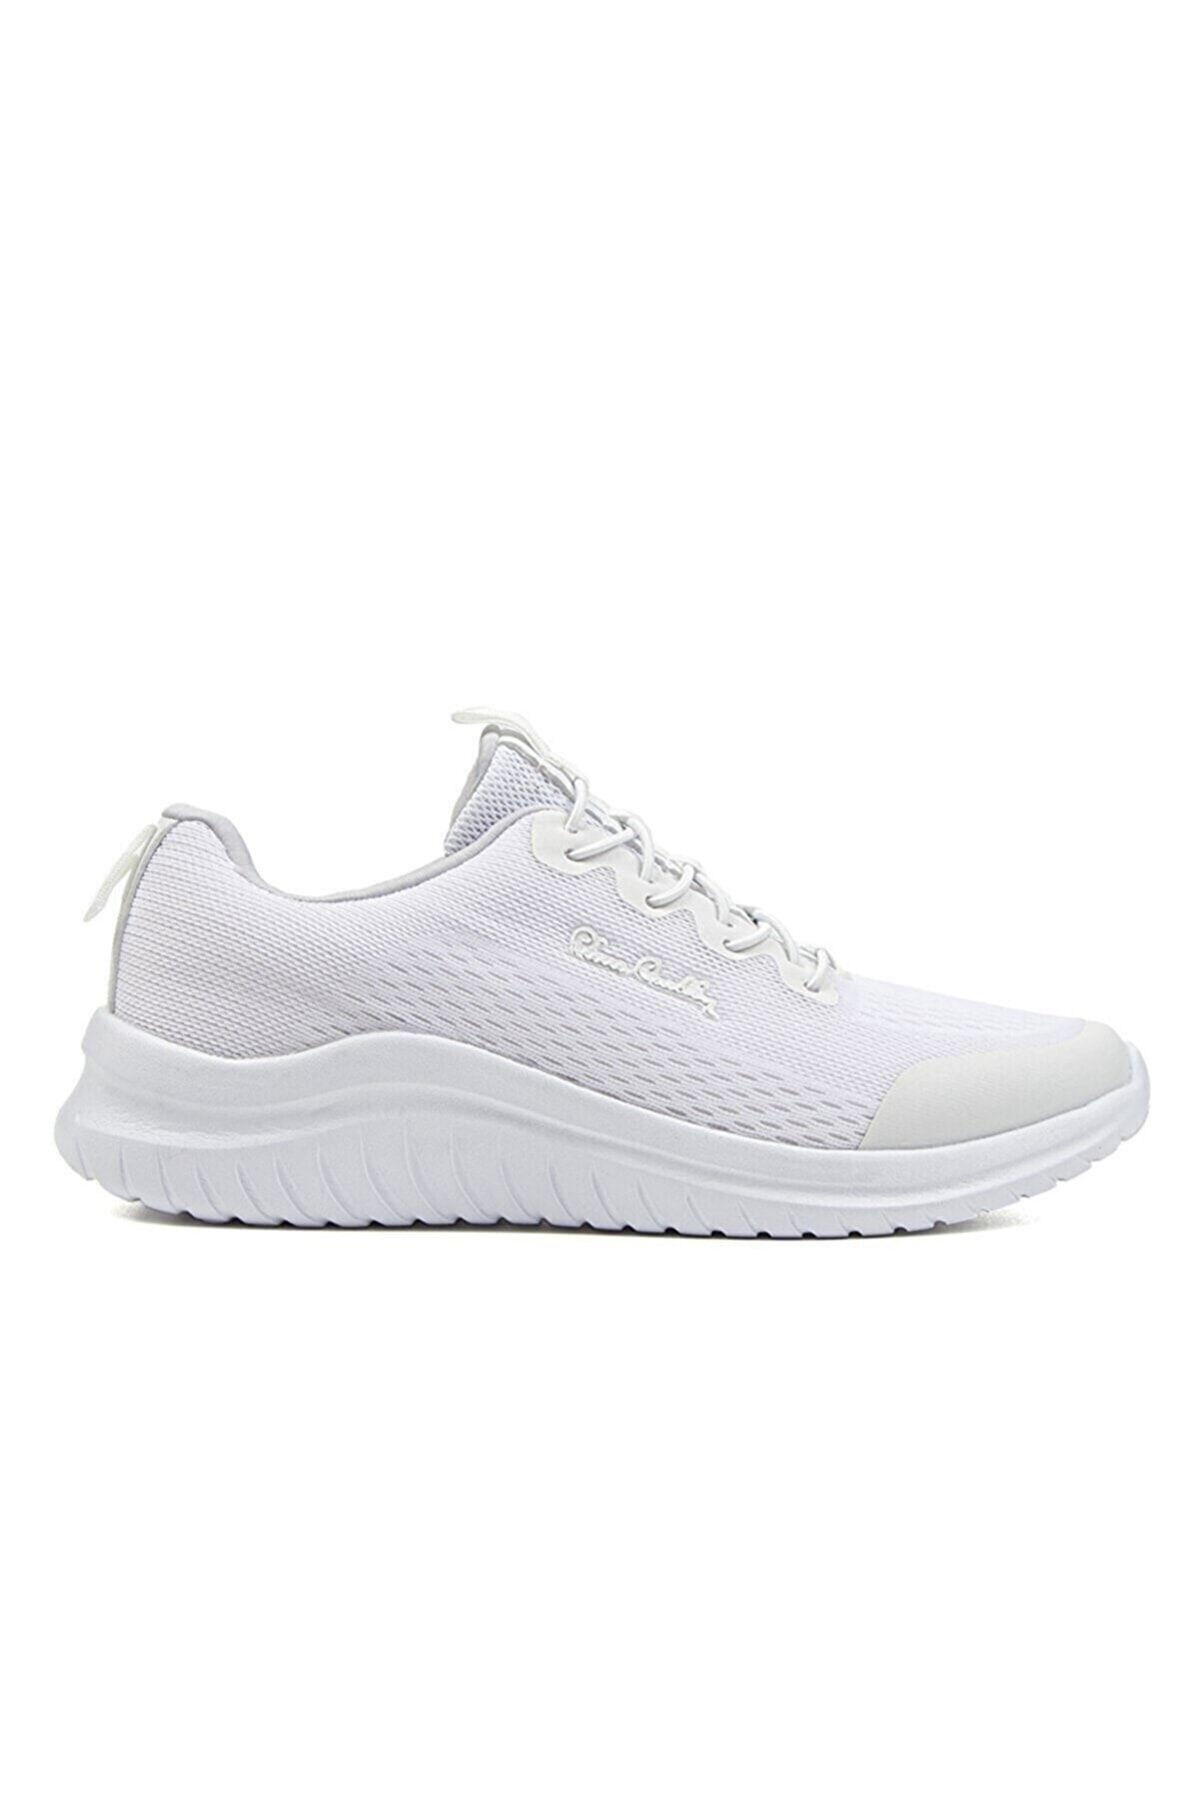 Pierre Cardin Kadın Beyaz Sneaker